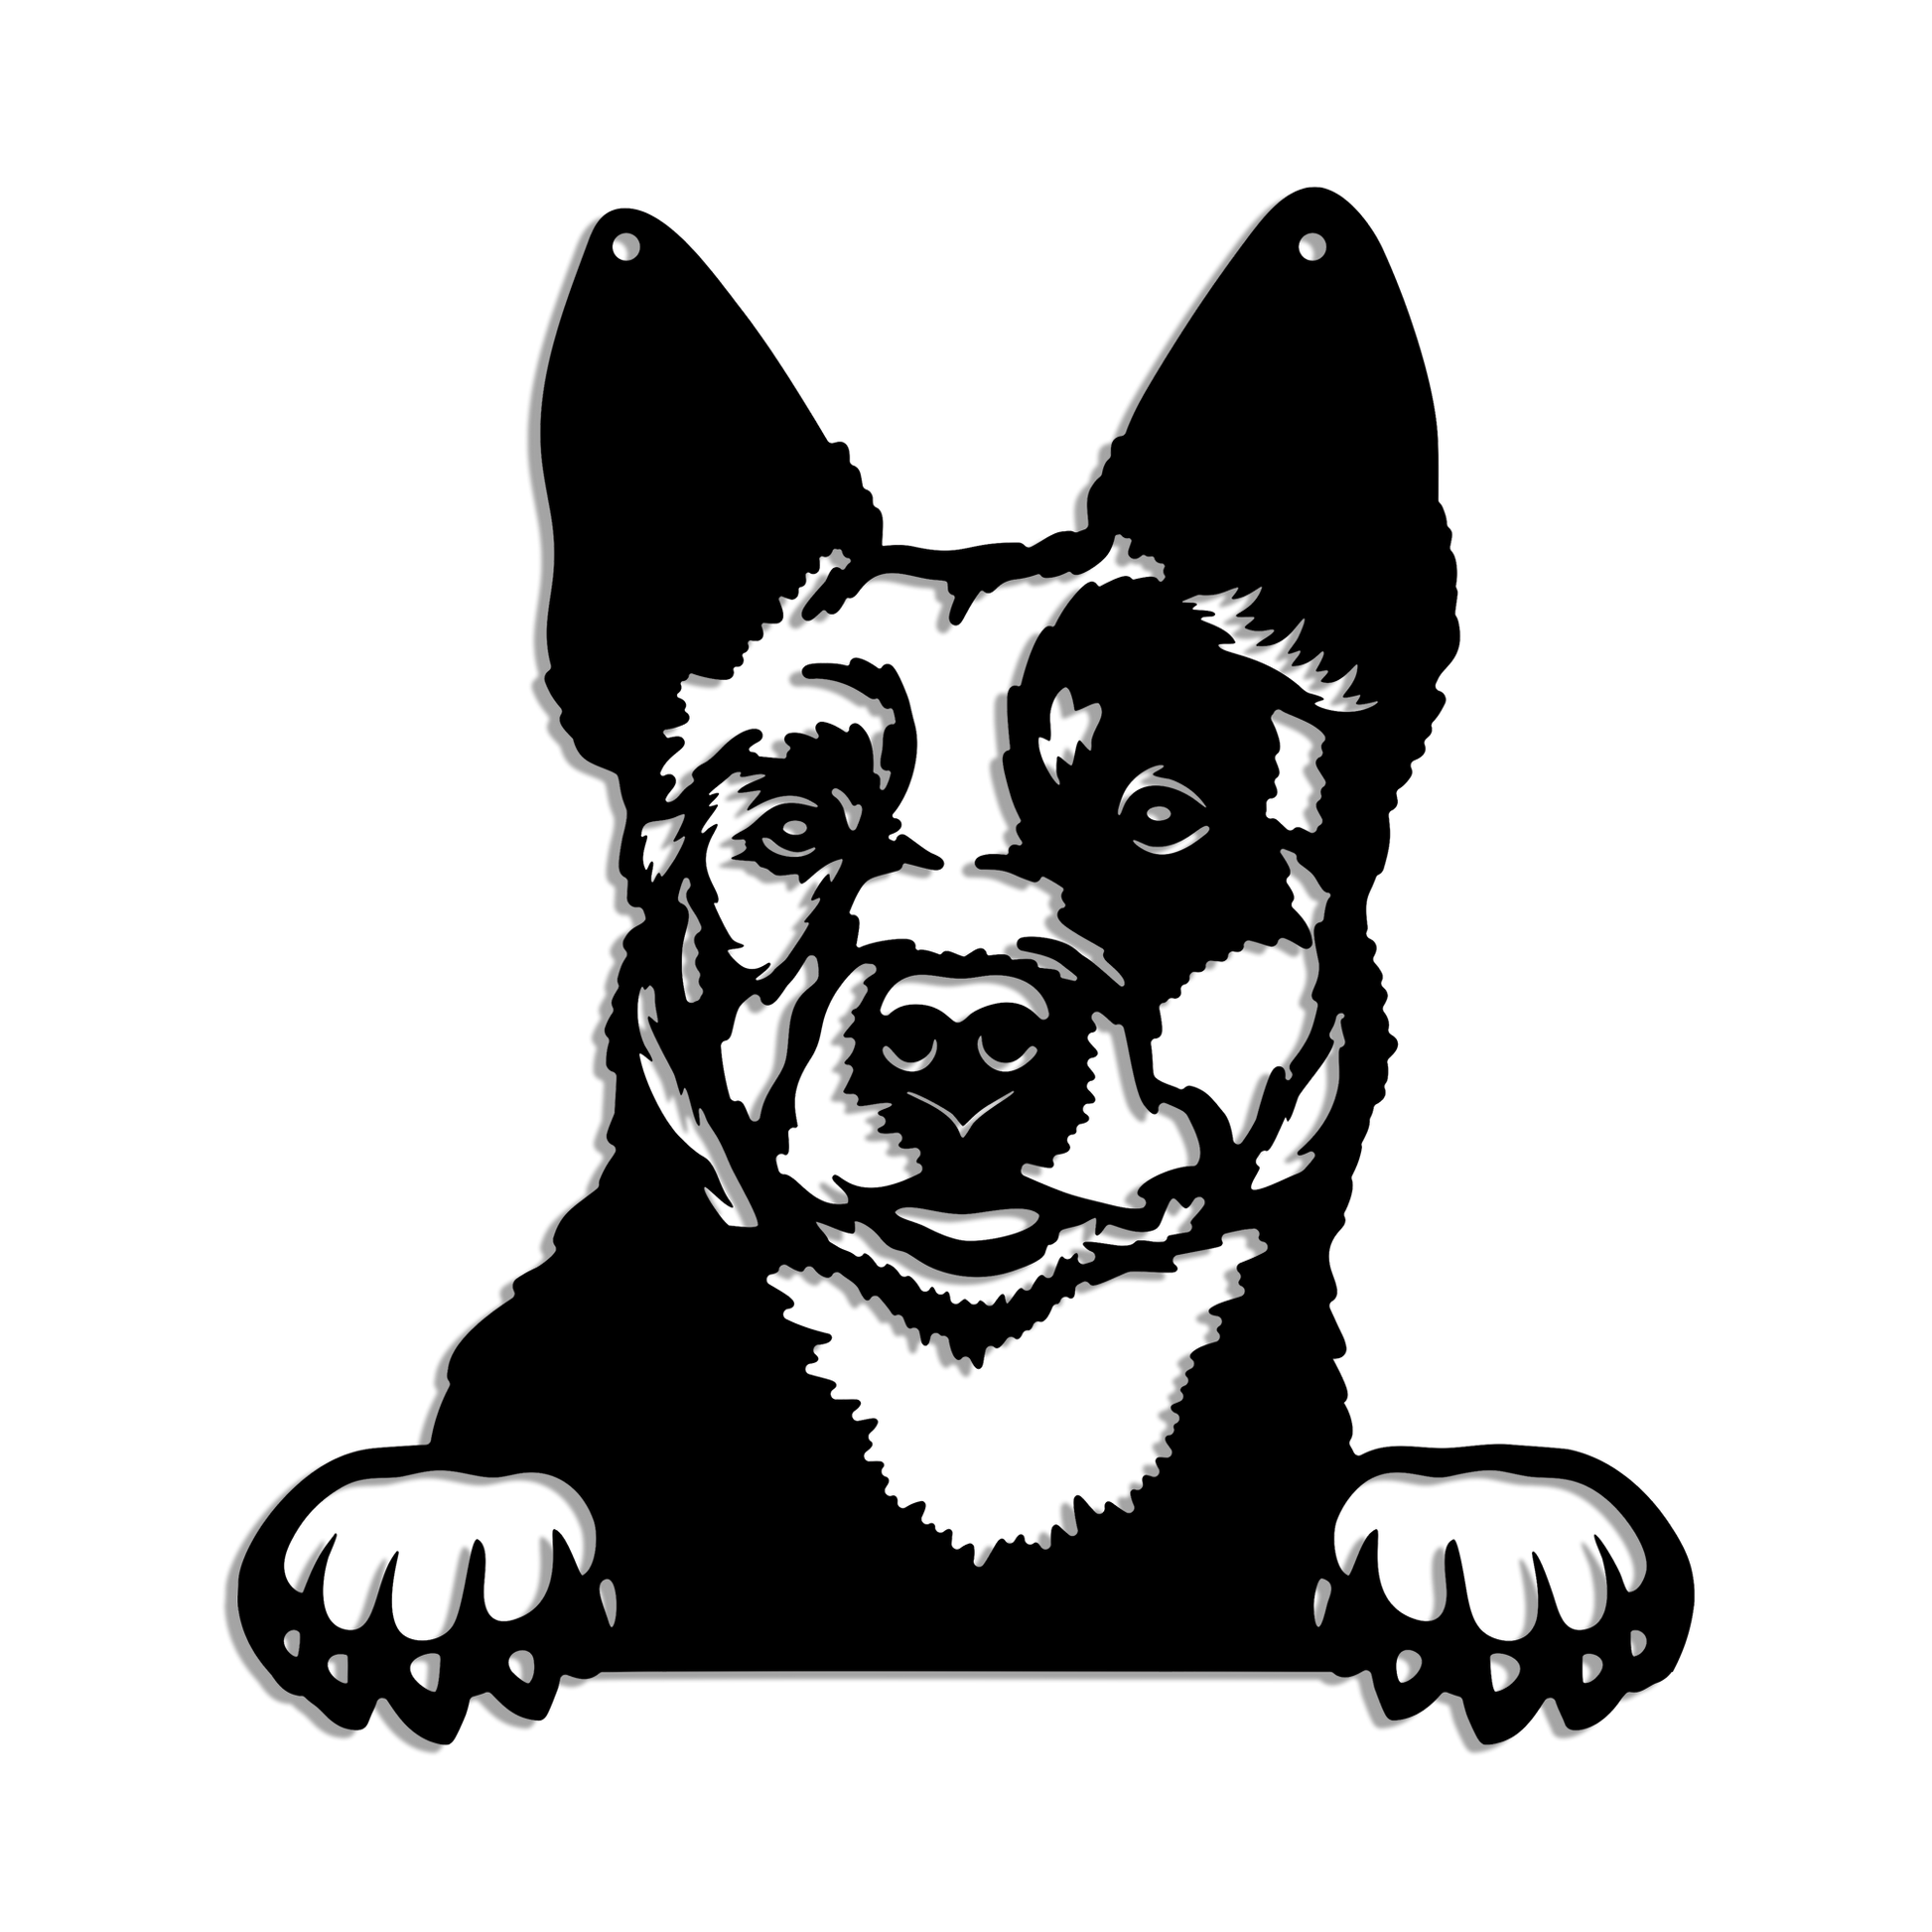 Blue Heeler (Australian Cattle Dog) Metal Art - Metal Dogs